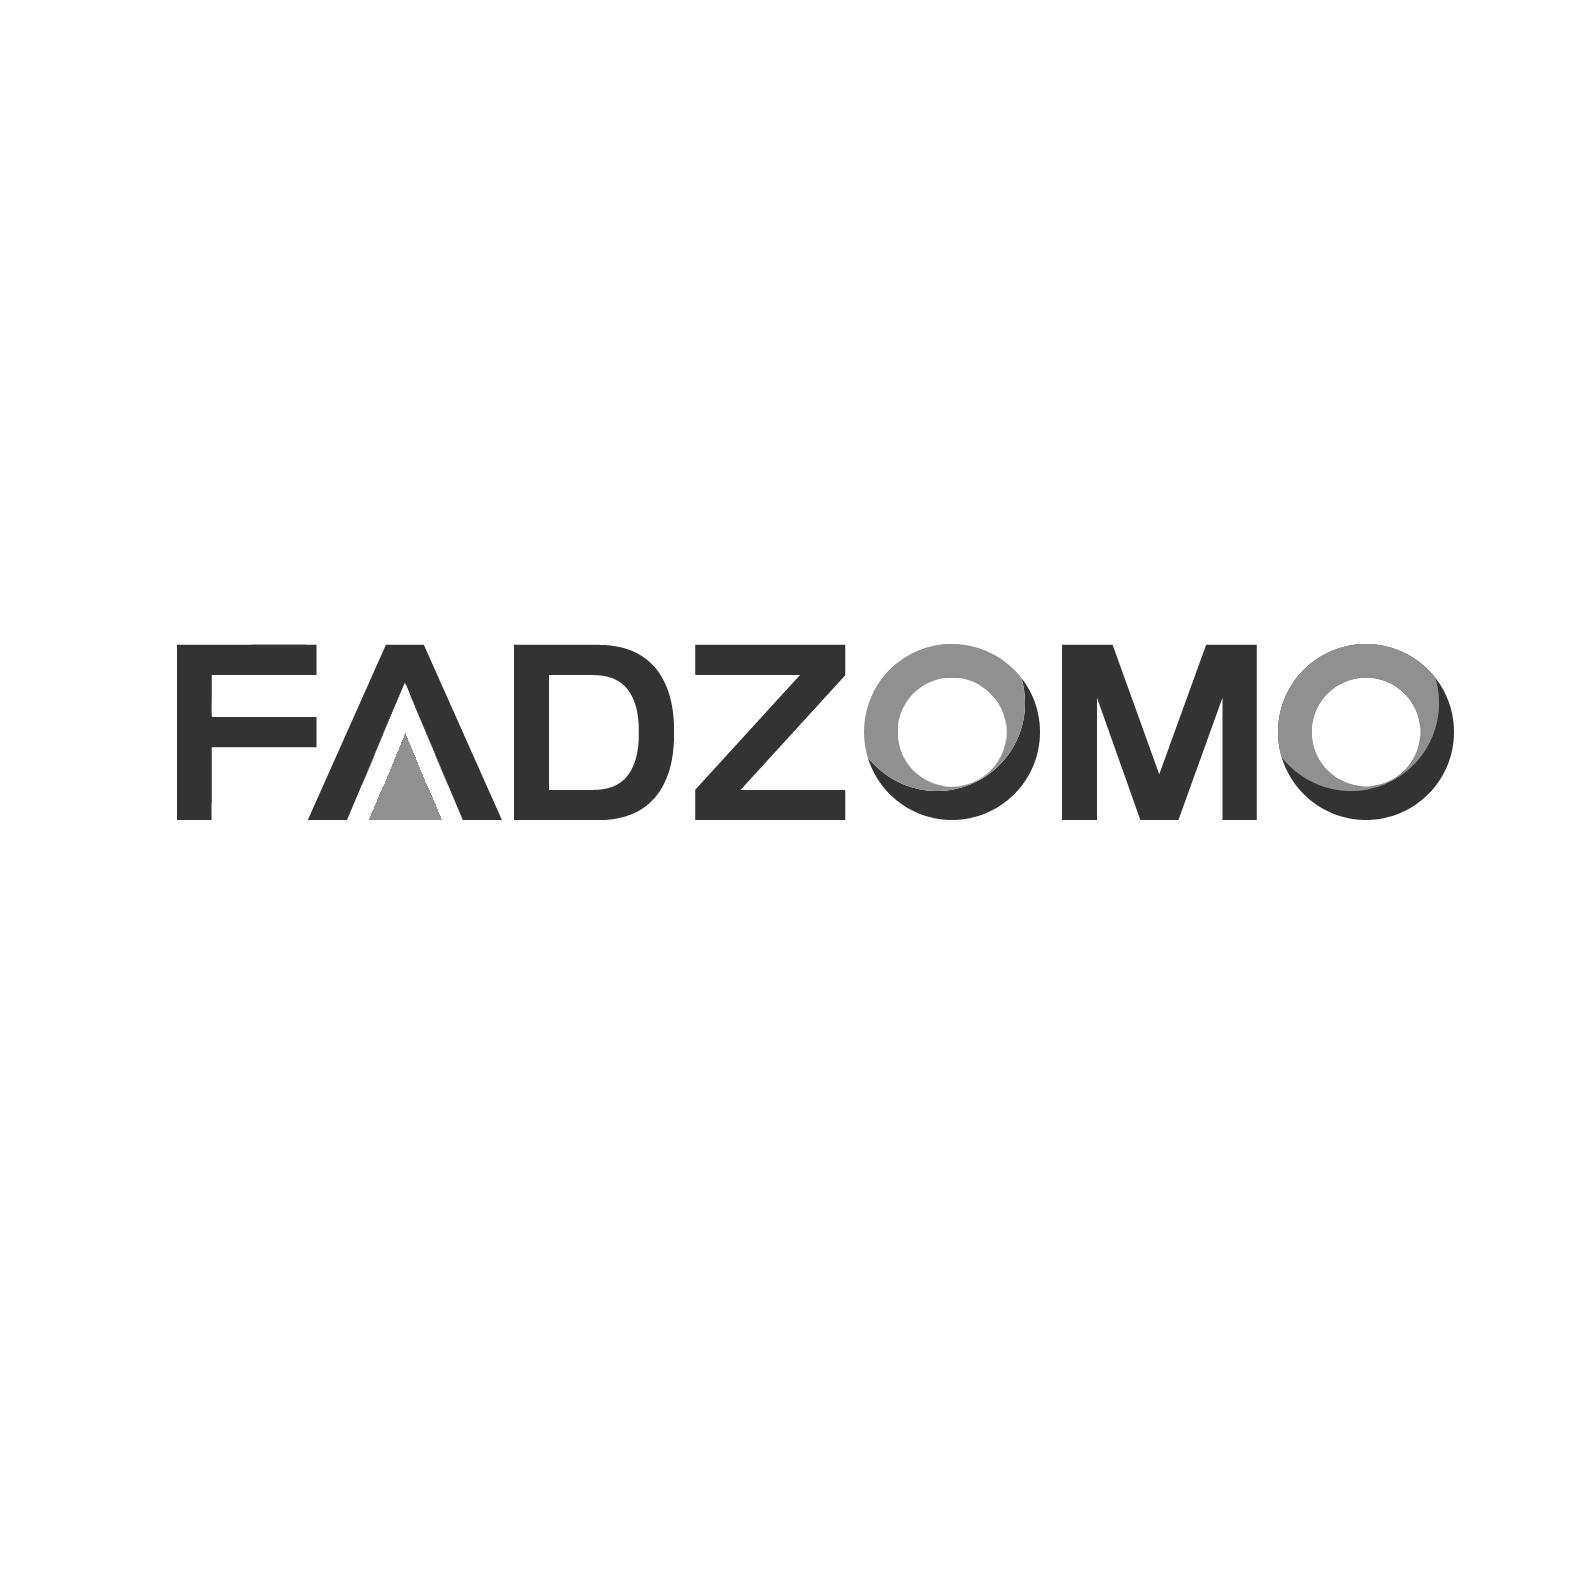 18类-箱包皮具FADZOMO商标转让